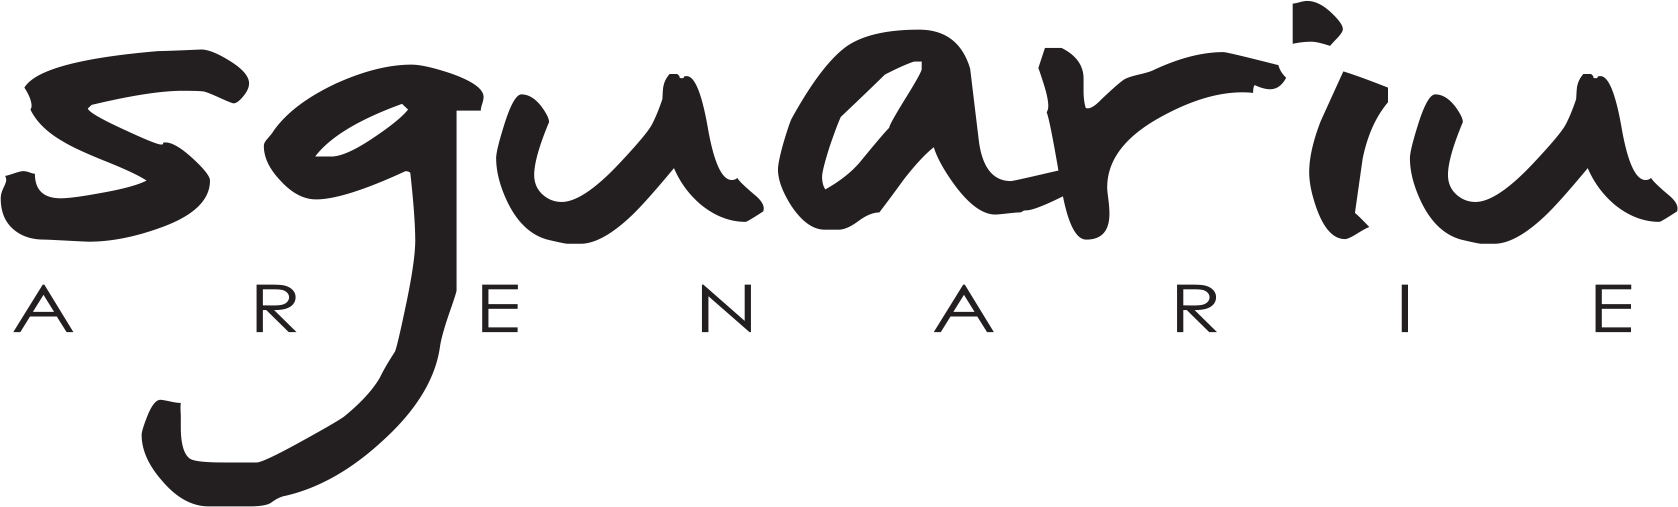 Sguariu Arenarie-logo png